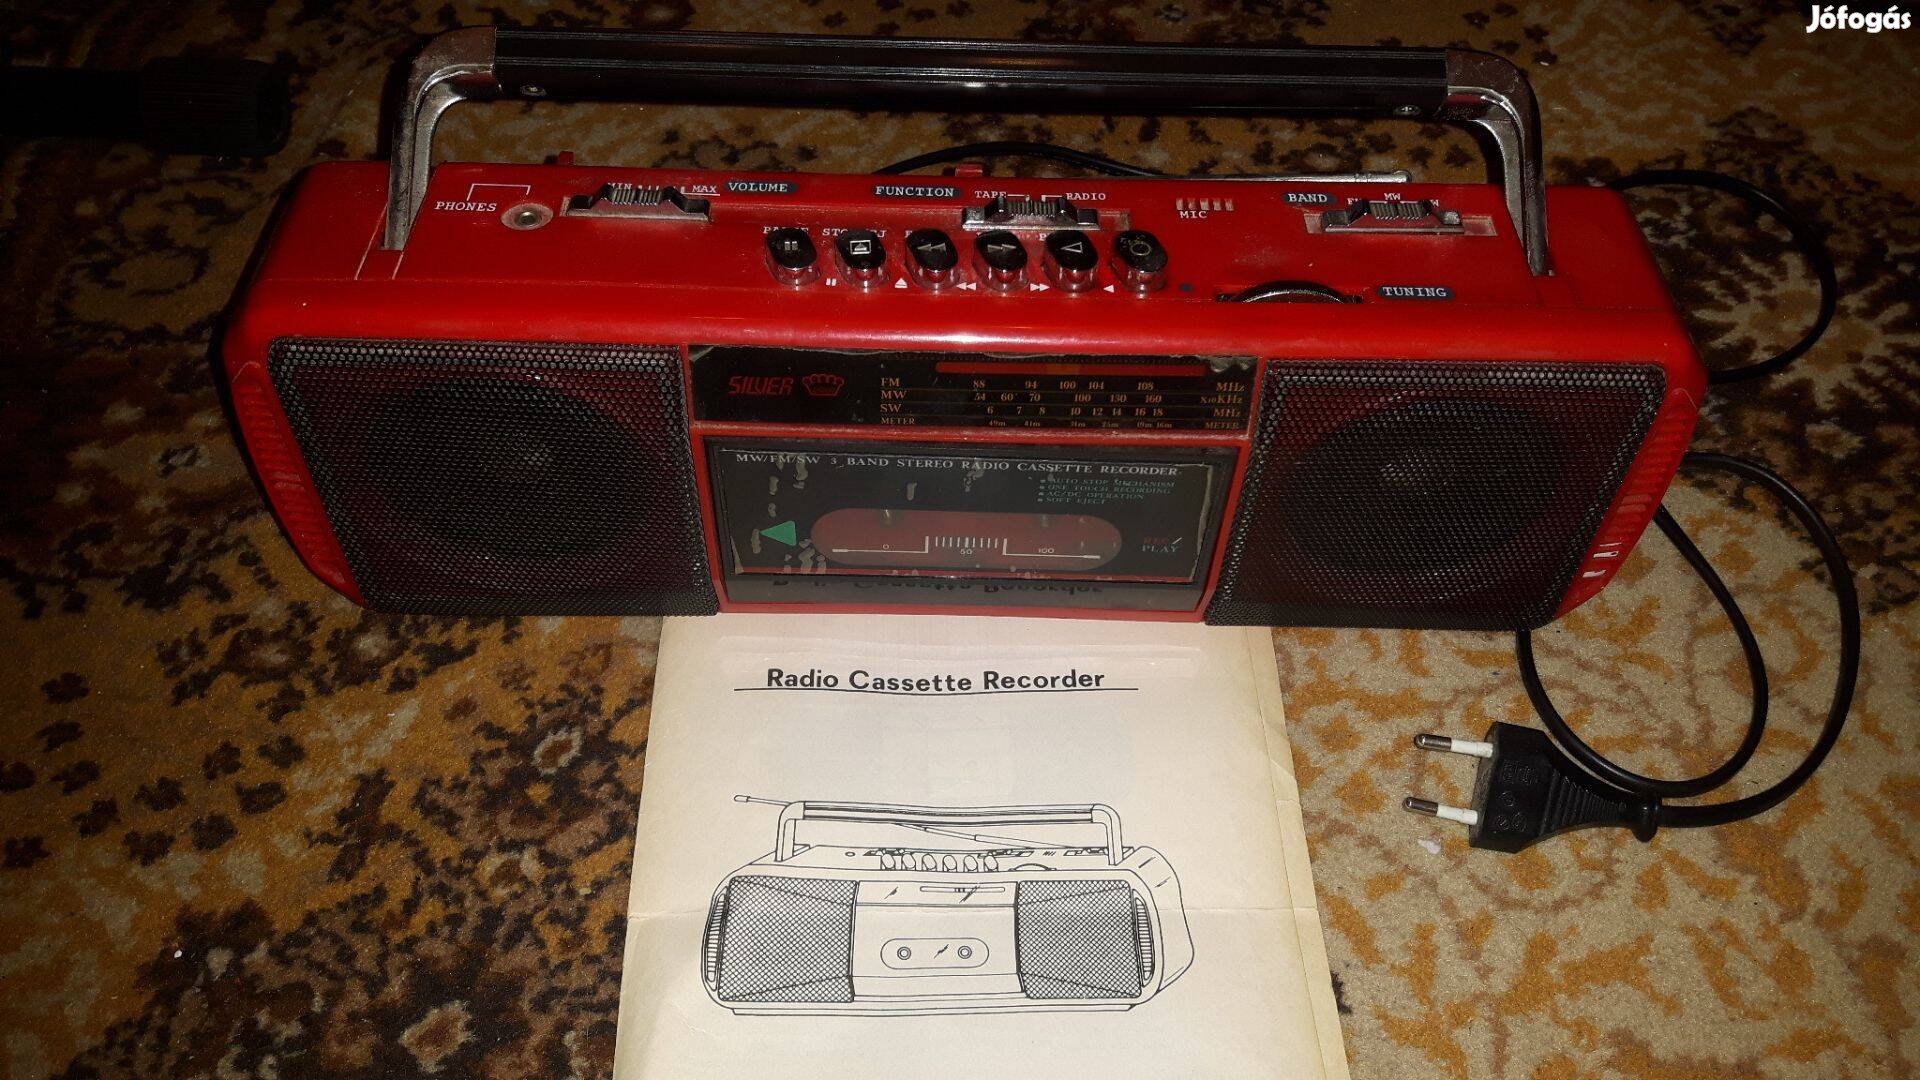 Silver retro rádió, működőképes, kontaktos